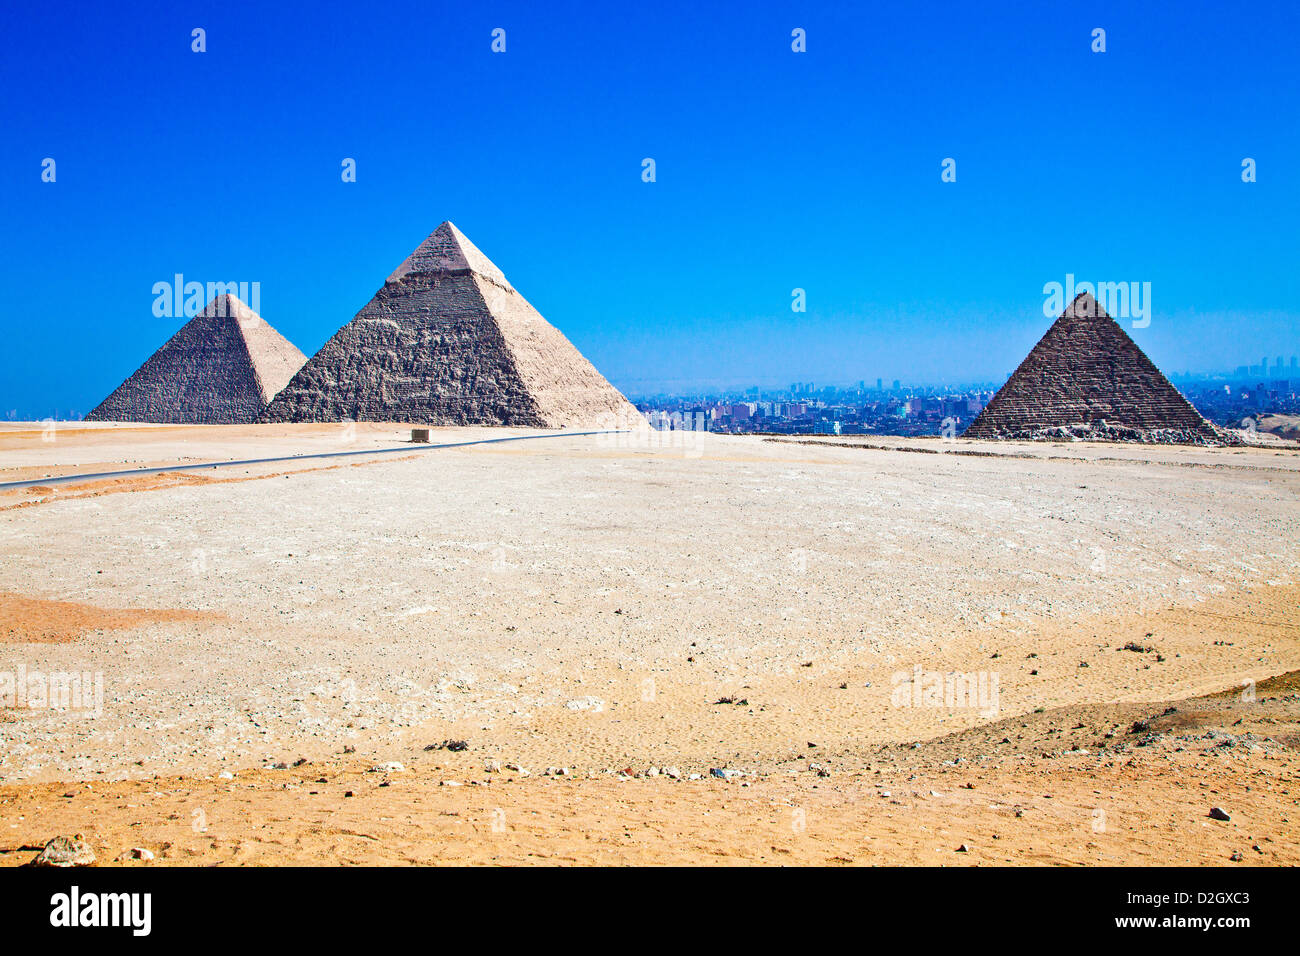 Grande pyramide de Gizeh nécropole complexe au Caire, Égypte. Cheops/Khufu, Khafré gauche/centre de Khéphren, Menkaourê/Ripperblackstaff droite. Banque D'Images